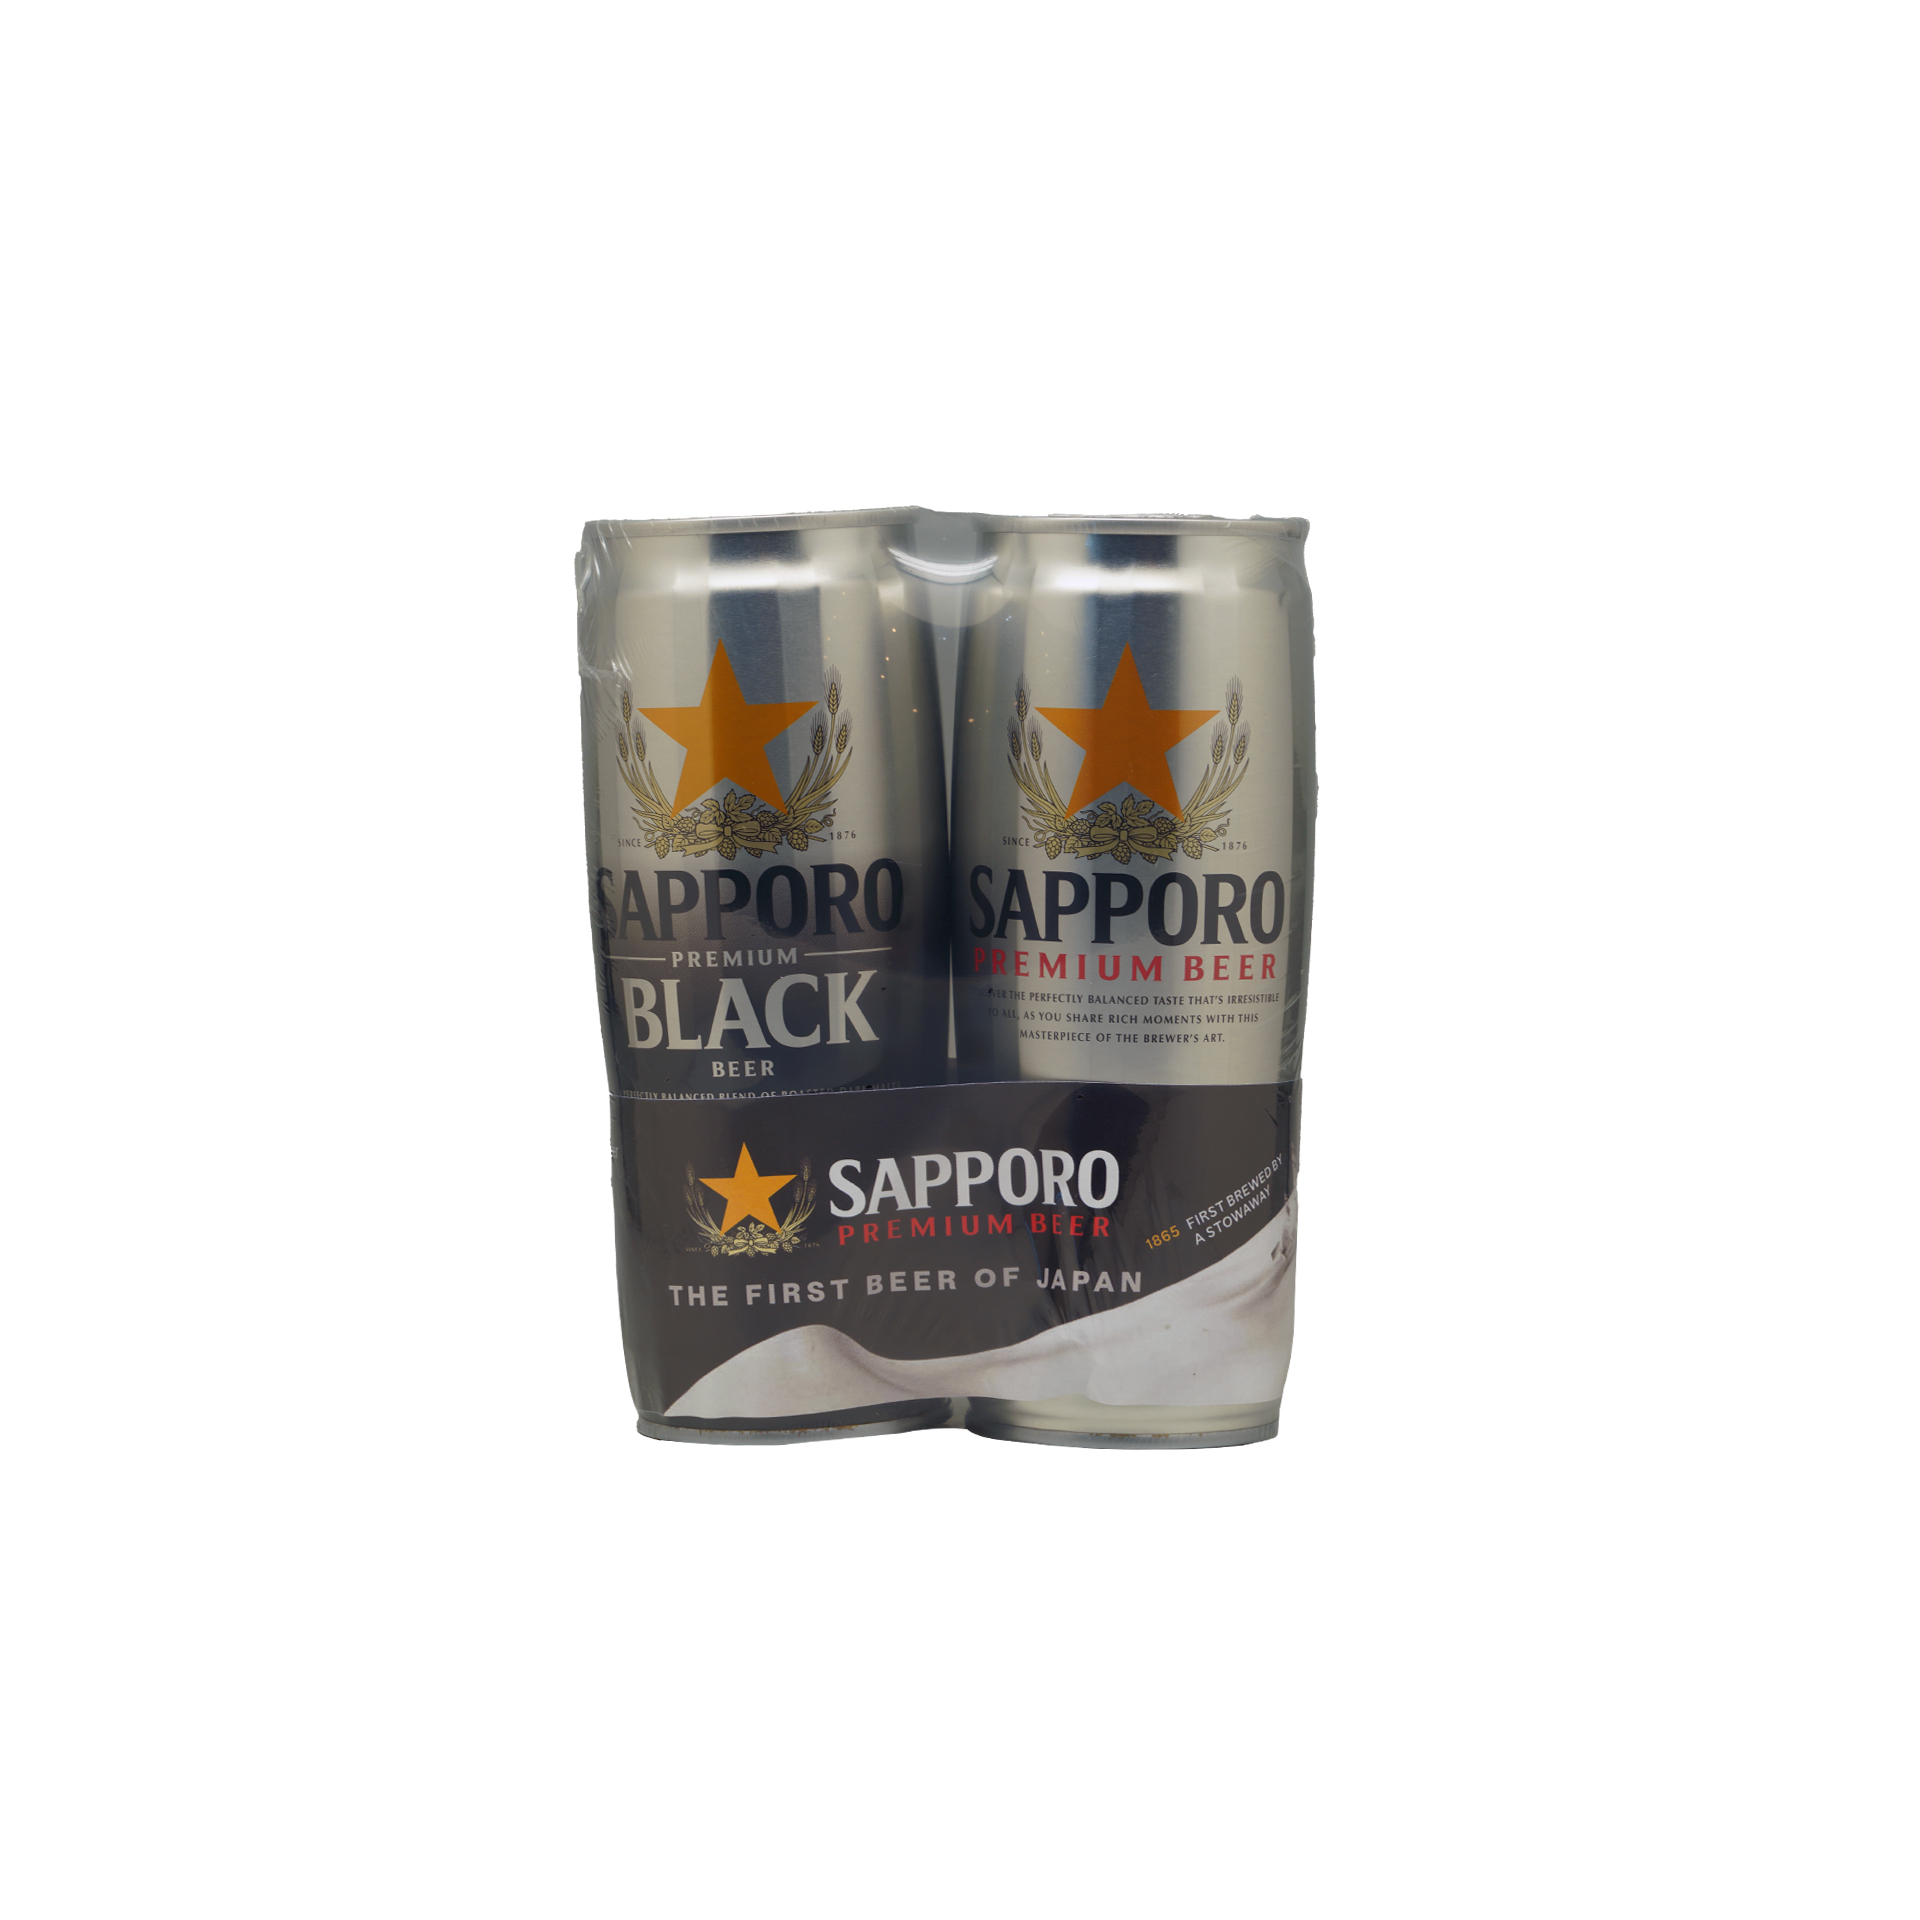 Sapporo Twin Pack Premium black beer & Premium Beer (650 ml each)